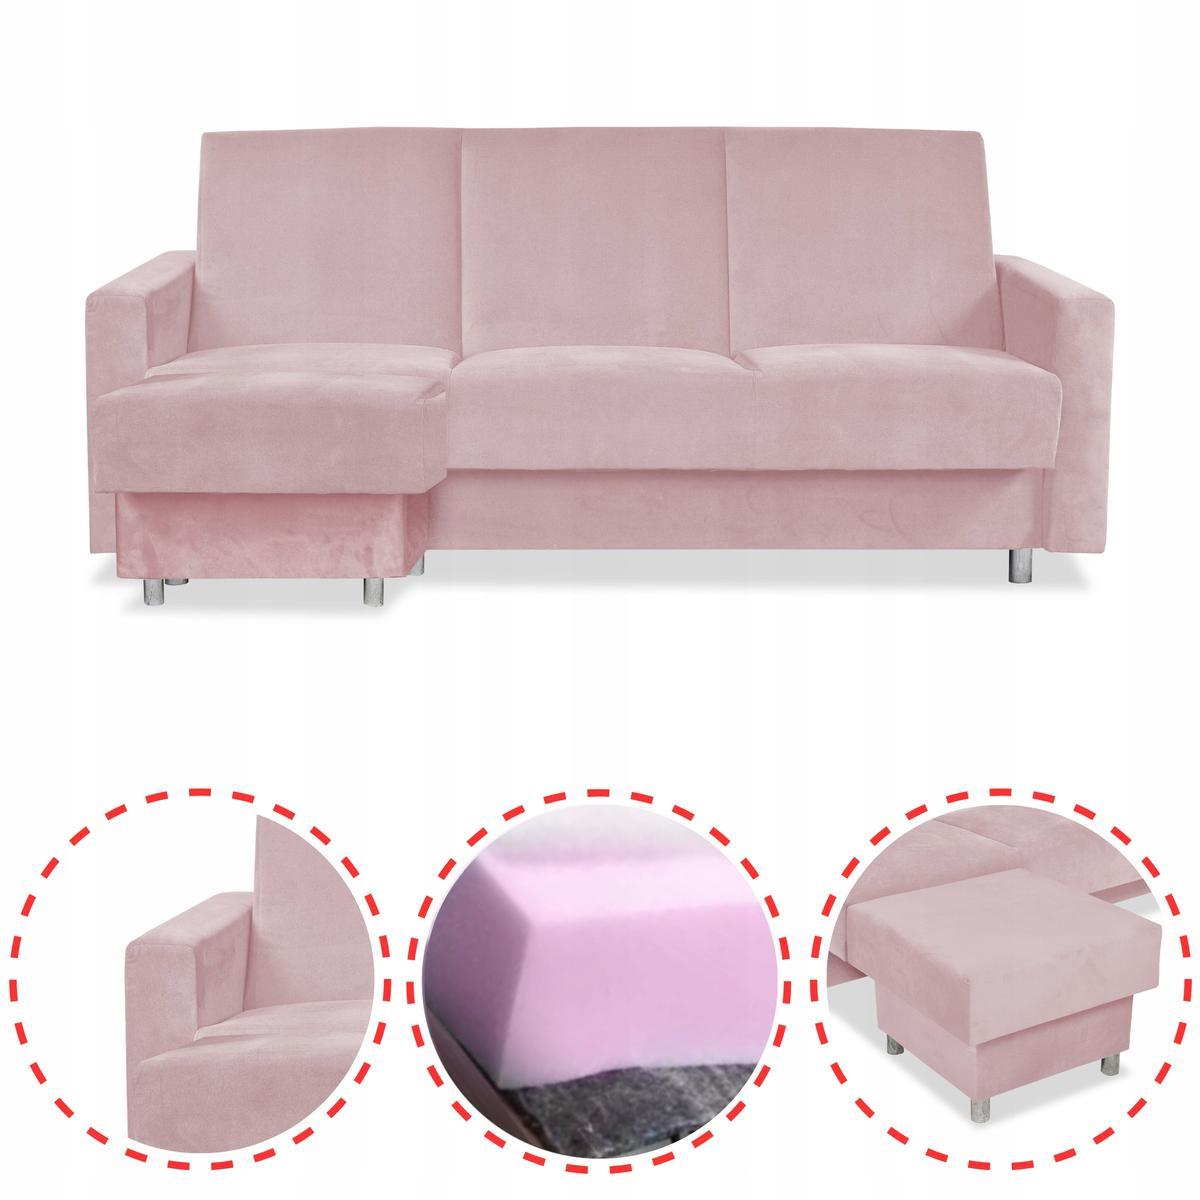 Wersalka Narożnik Alicja z pufą sofa kanapa rozkładana Family Meble różowa nr. 2